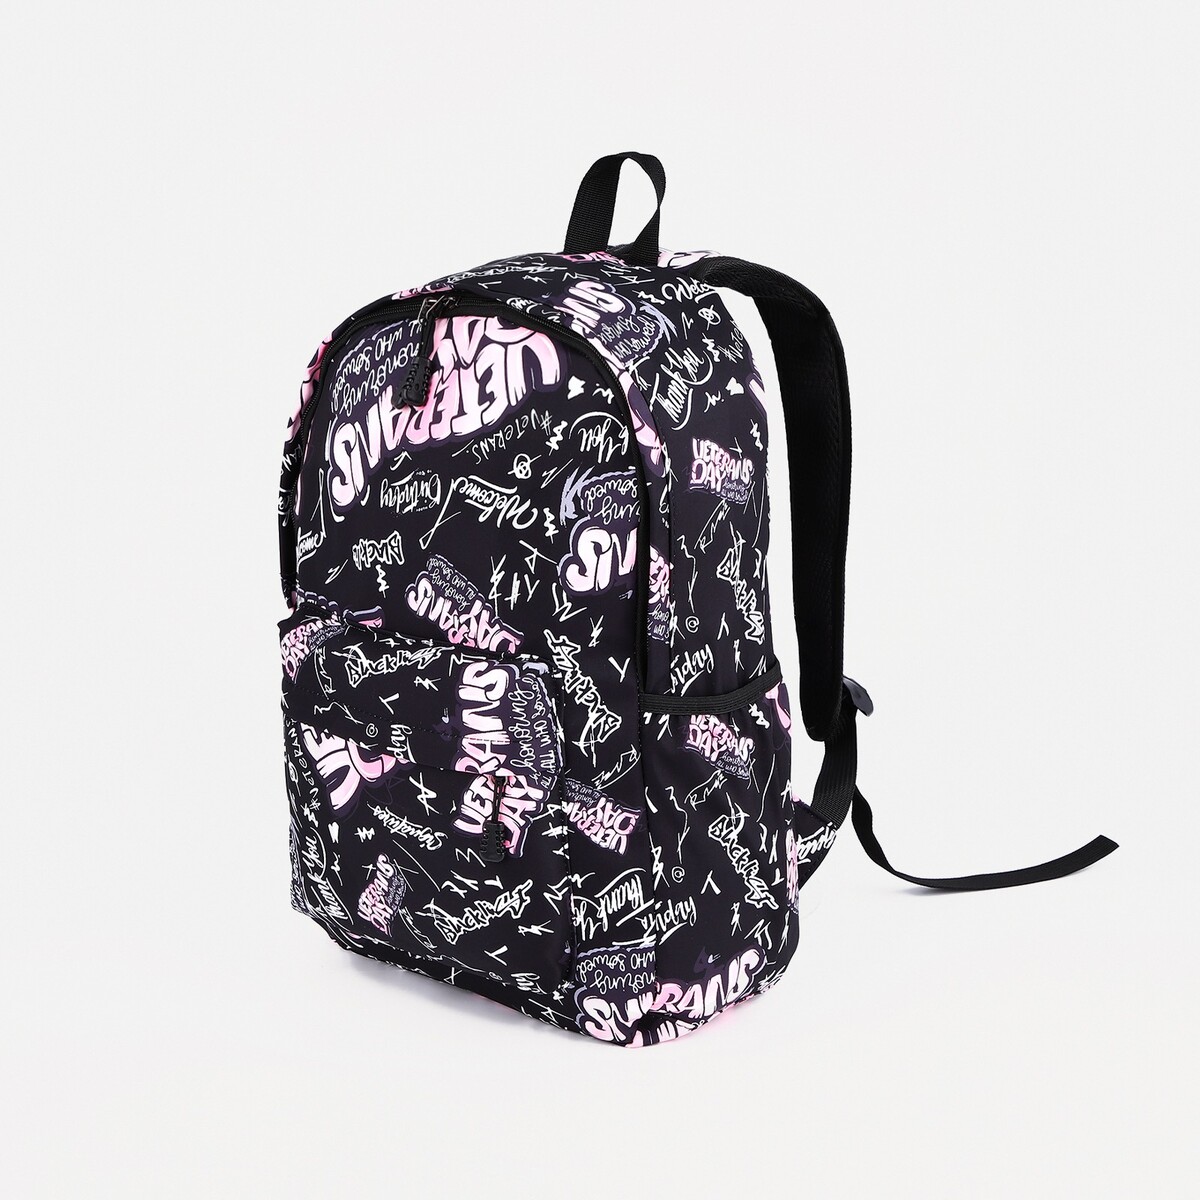 Рюкзак на молнии, 3 наружных кармана, цвет розовый/черный рюкзак на молнии 3 наружных кармана малиновый